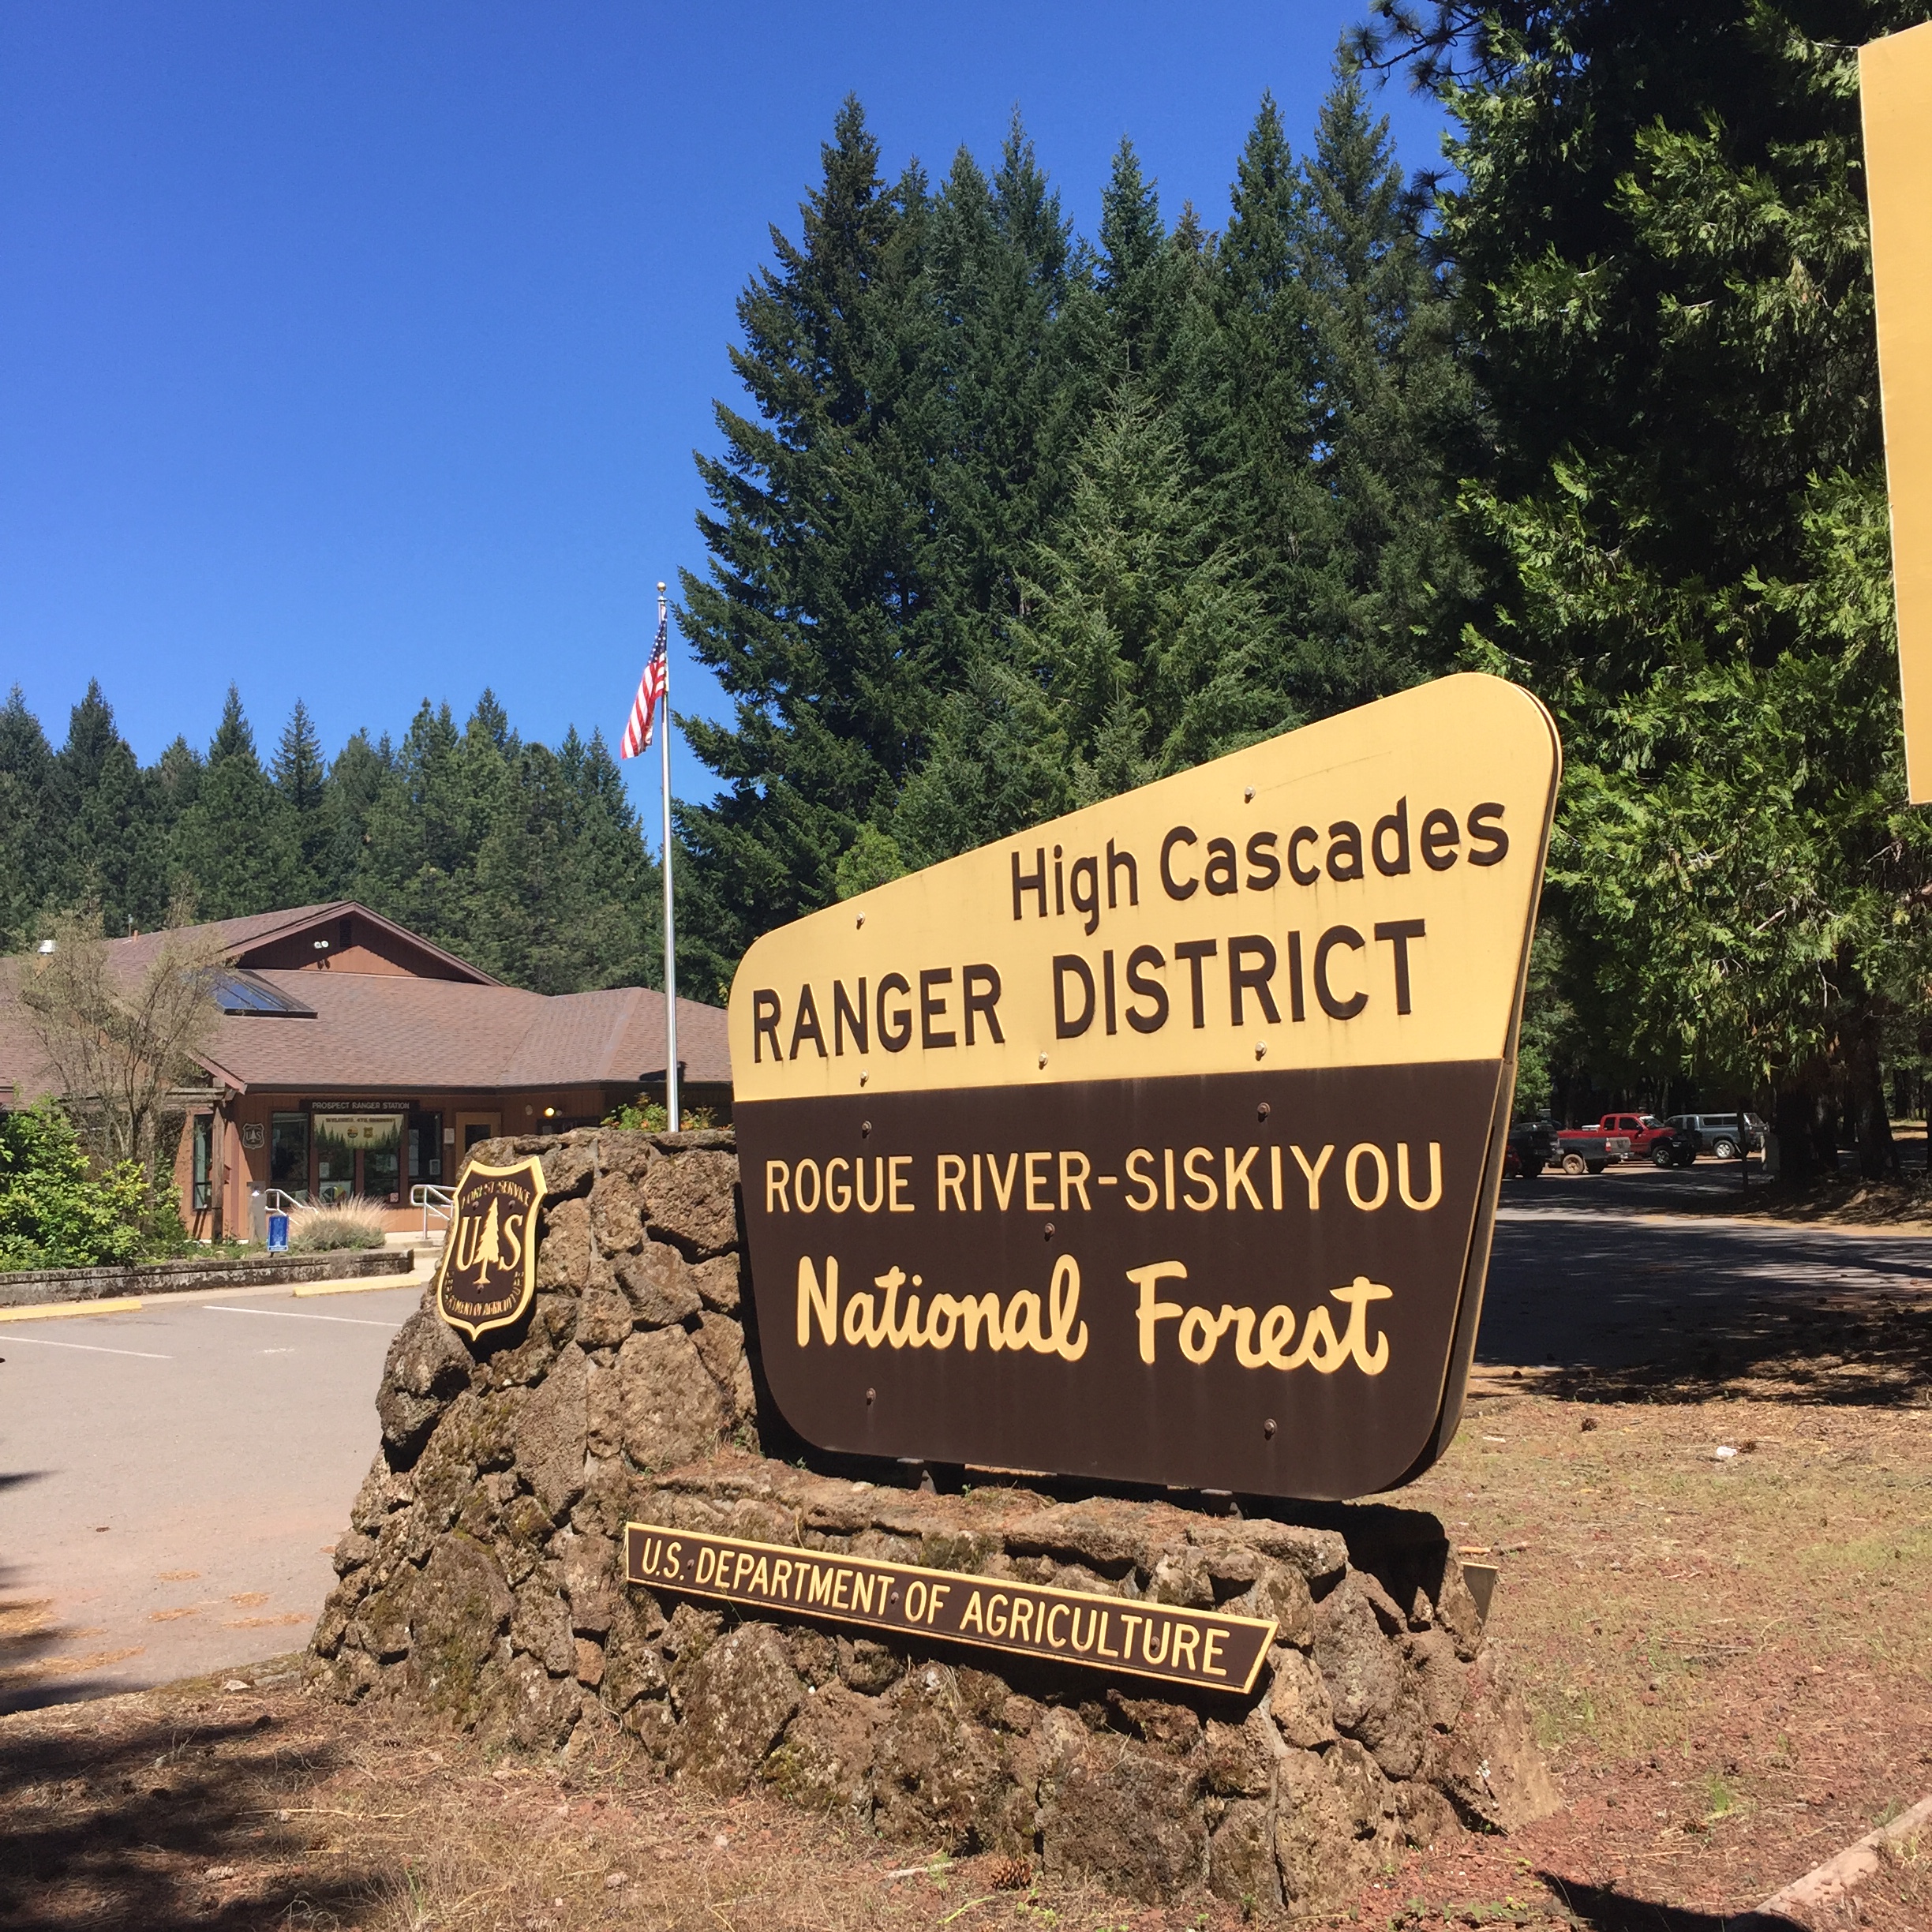 High Cascades Ranger District